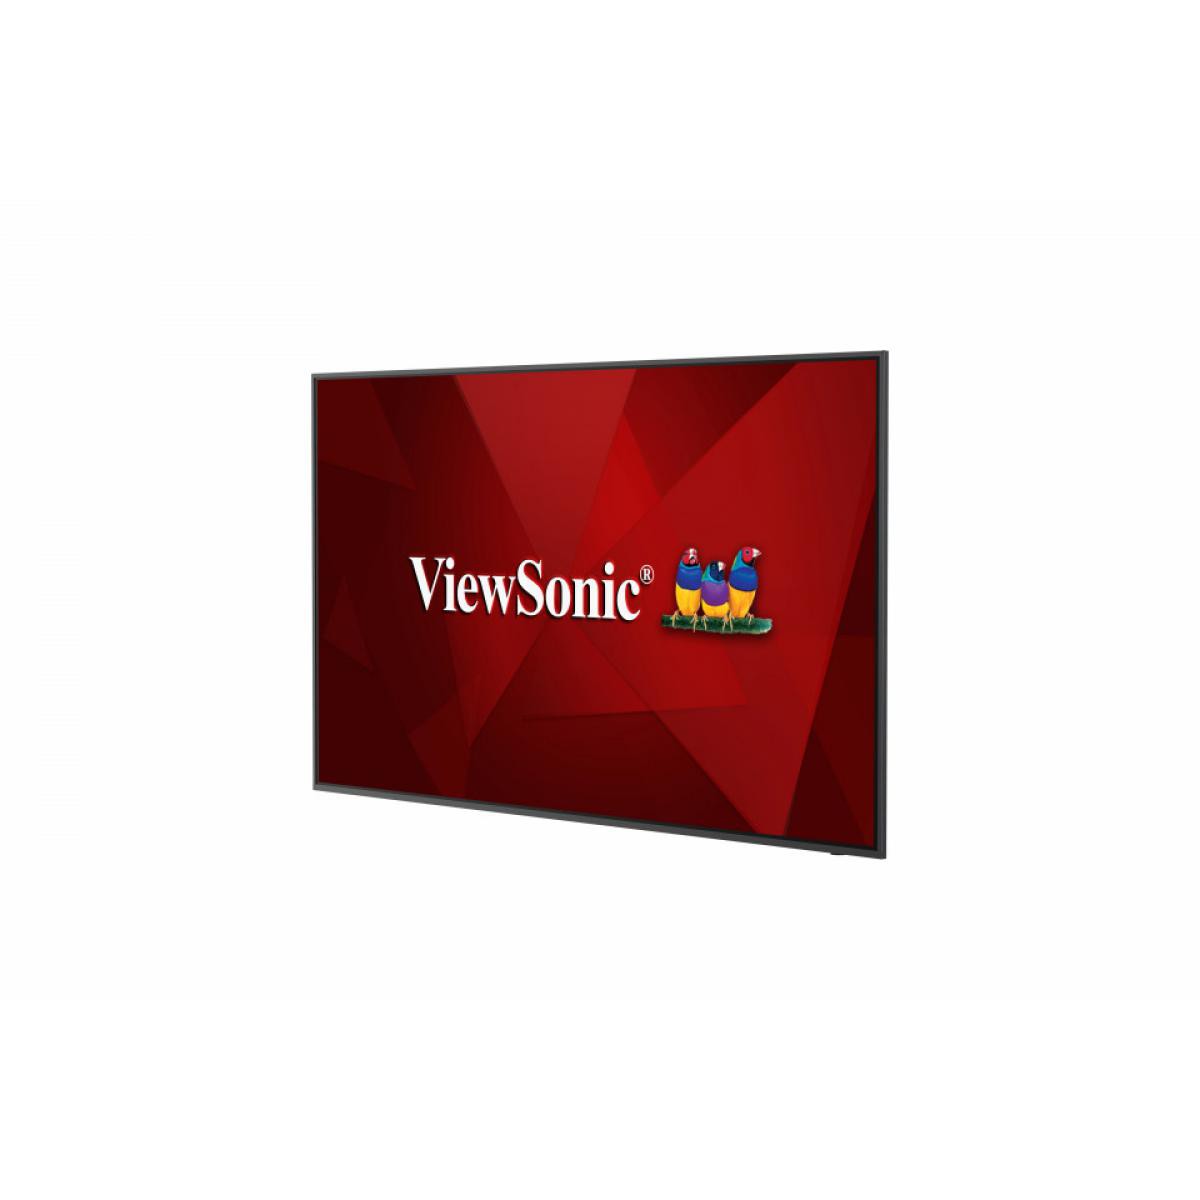 Viewsonic - Viewsonic ViewSonic CDE6520 - Moniteur PC